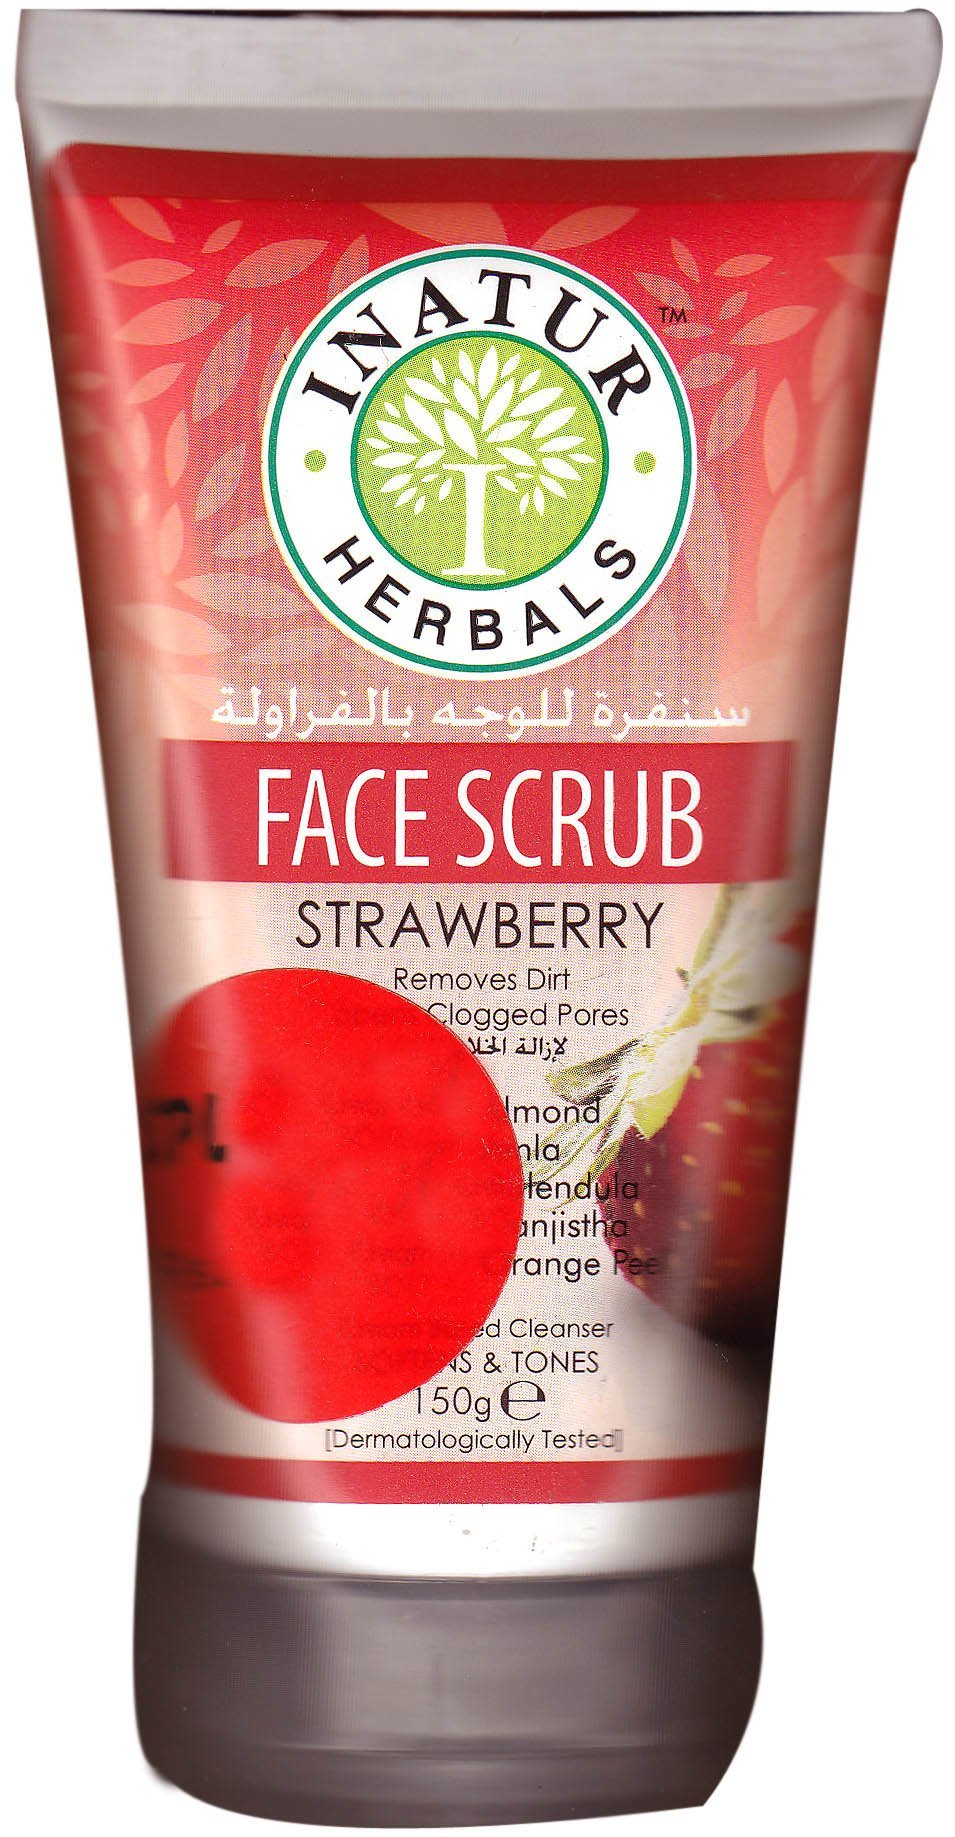 Face Scrub Strawberry - book cover